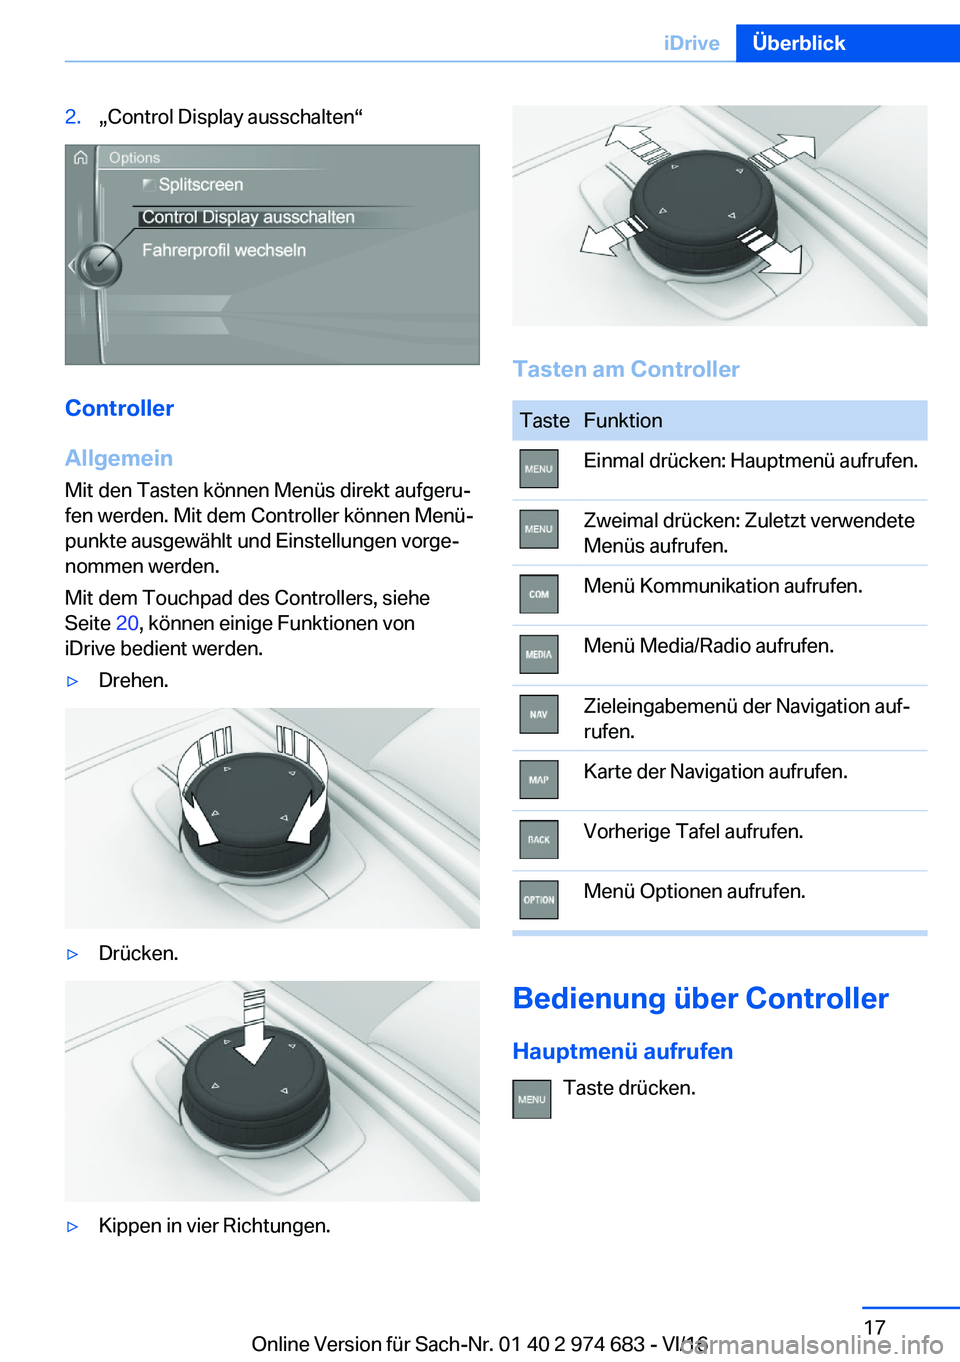 BMW M2 2017  Betriebsanleitungen (in German) �2�.x�C�o�n�t�r�o�l� �D�i�s�p�l�a�y� �a�u�s�s�c�h�a�l�t�e�nv
�C�o�n�t�r�o�l�l�e�r
�A�l�l�g�e�m�e�i�n �M�i�t� �d�e�n� �T�a�s�t�e�n� �k�